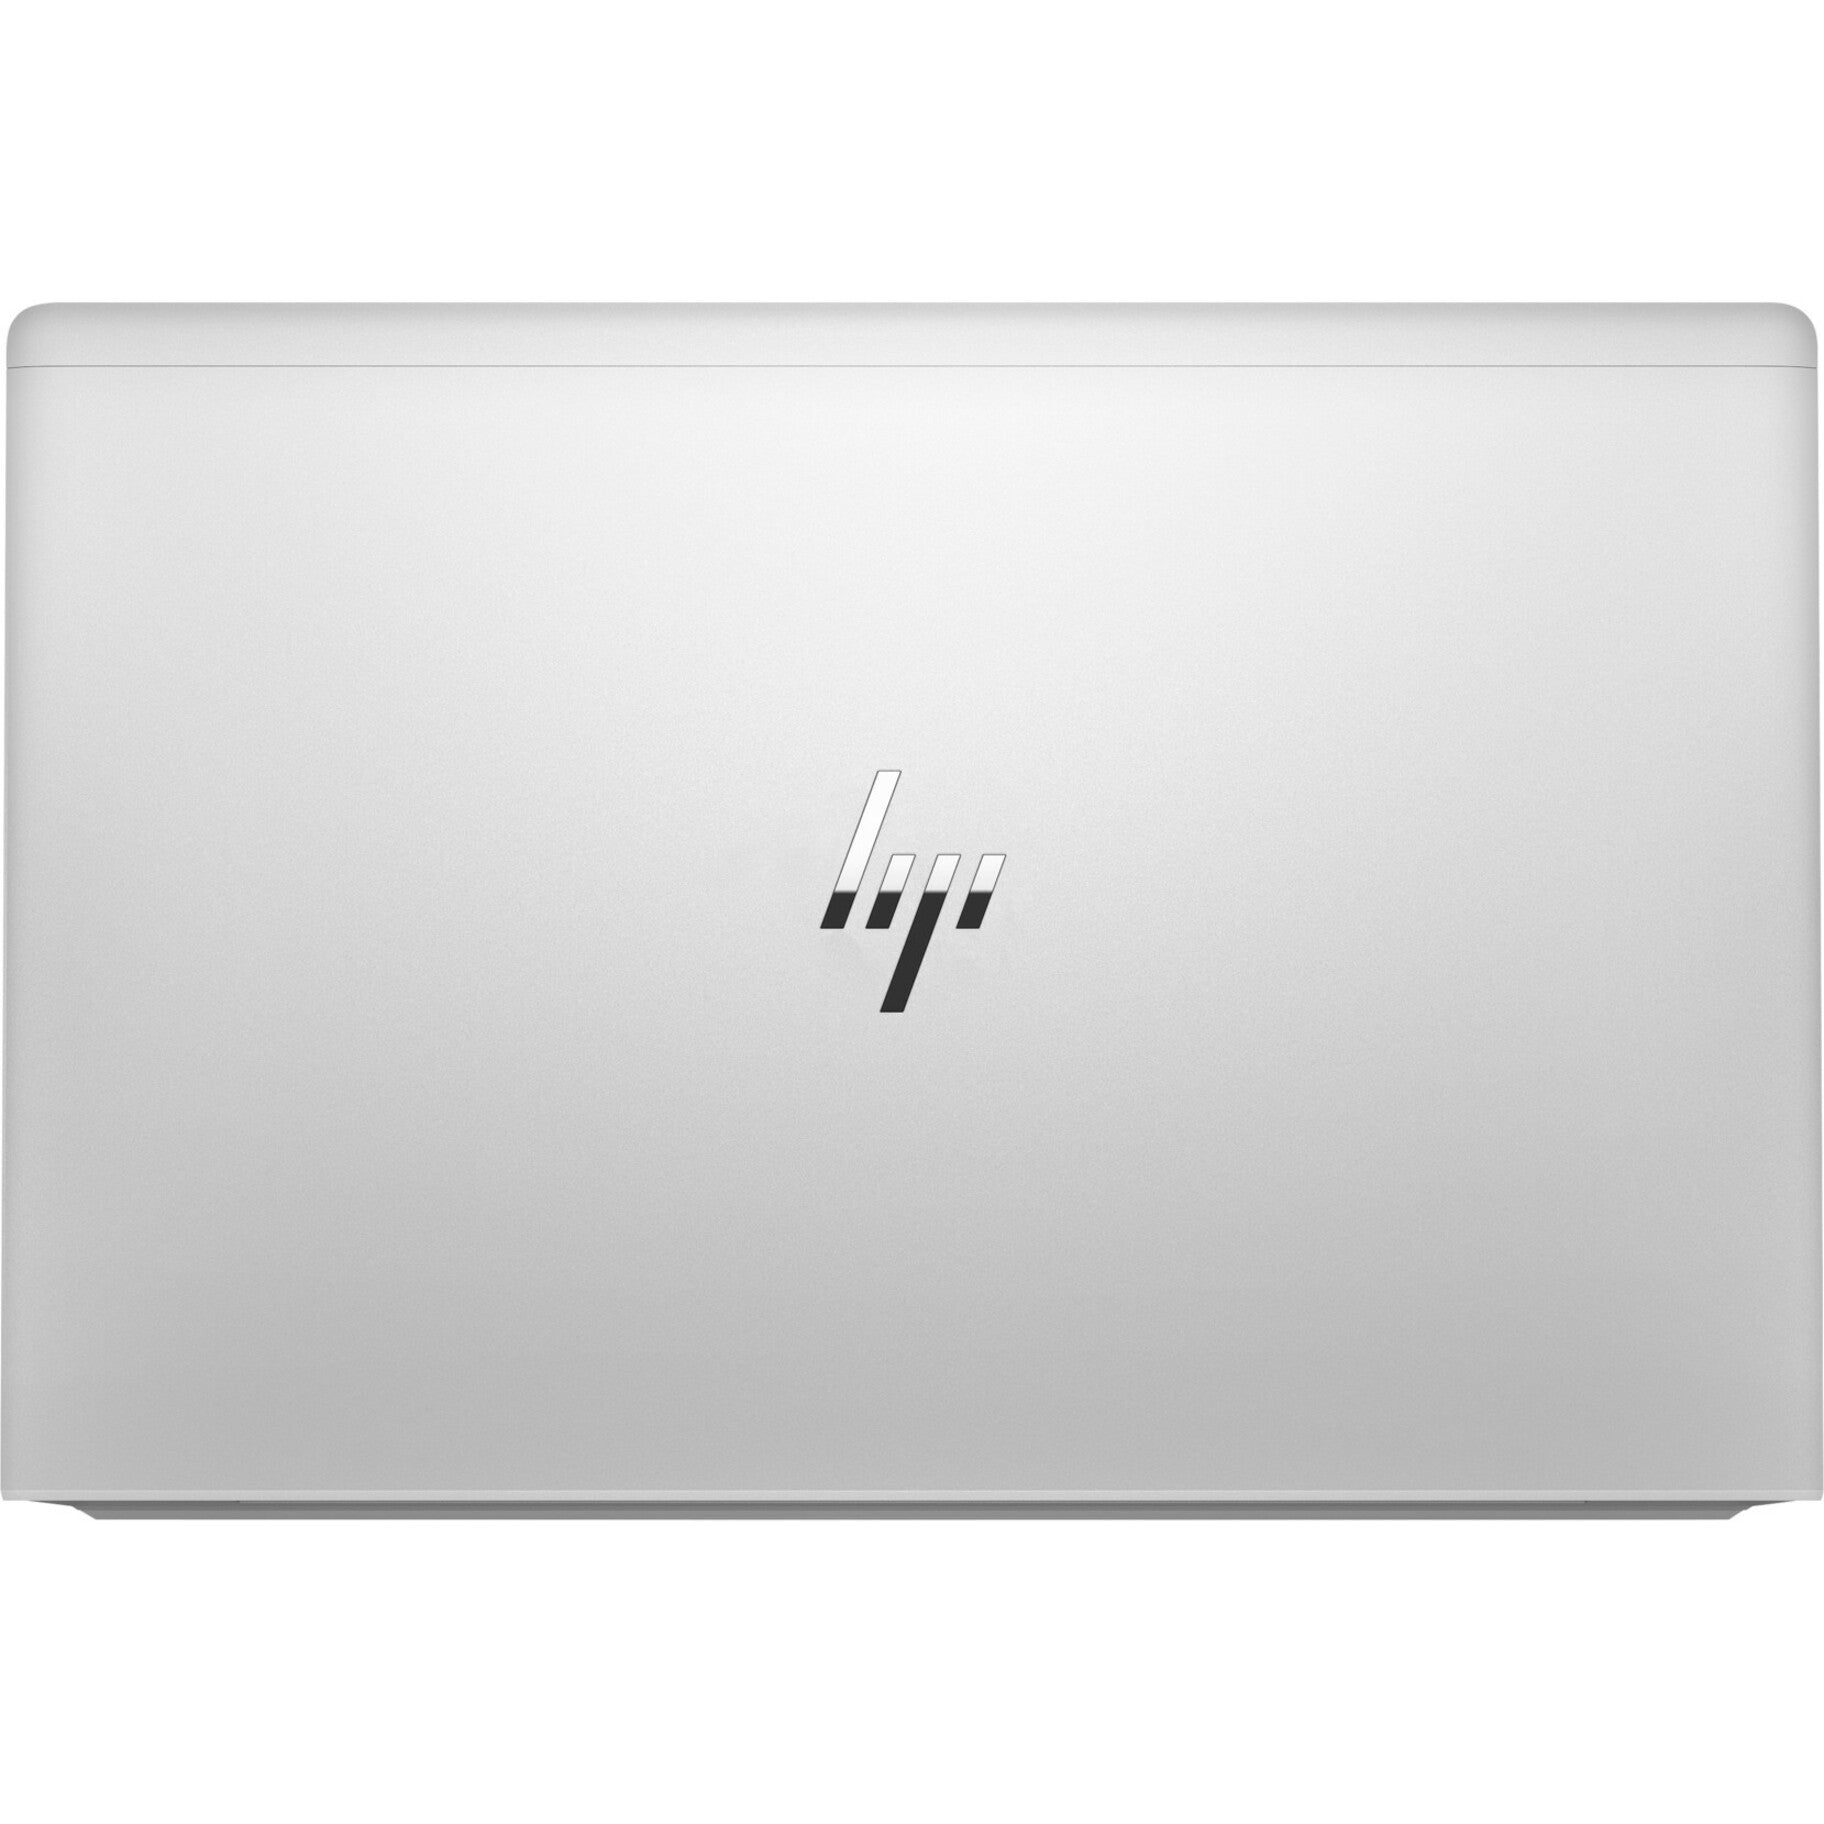 HP EliteBook 640 14 inch G9 Notebook PC, Deca-core Processor, 16GB RAM, 256GB SSD